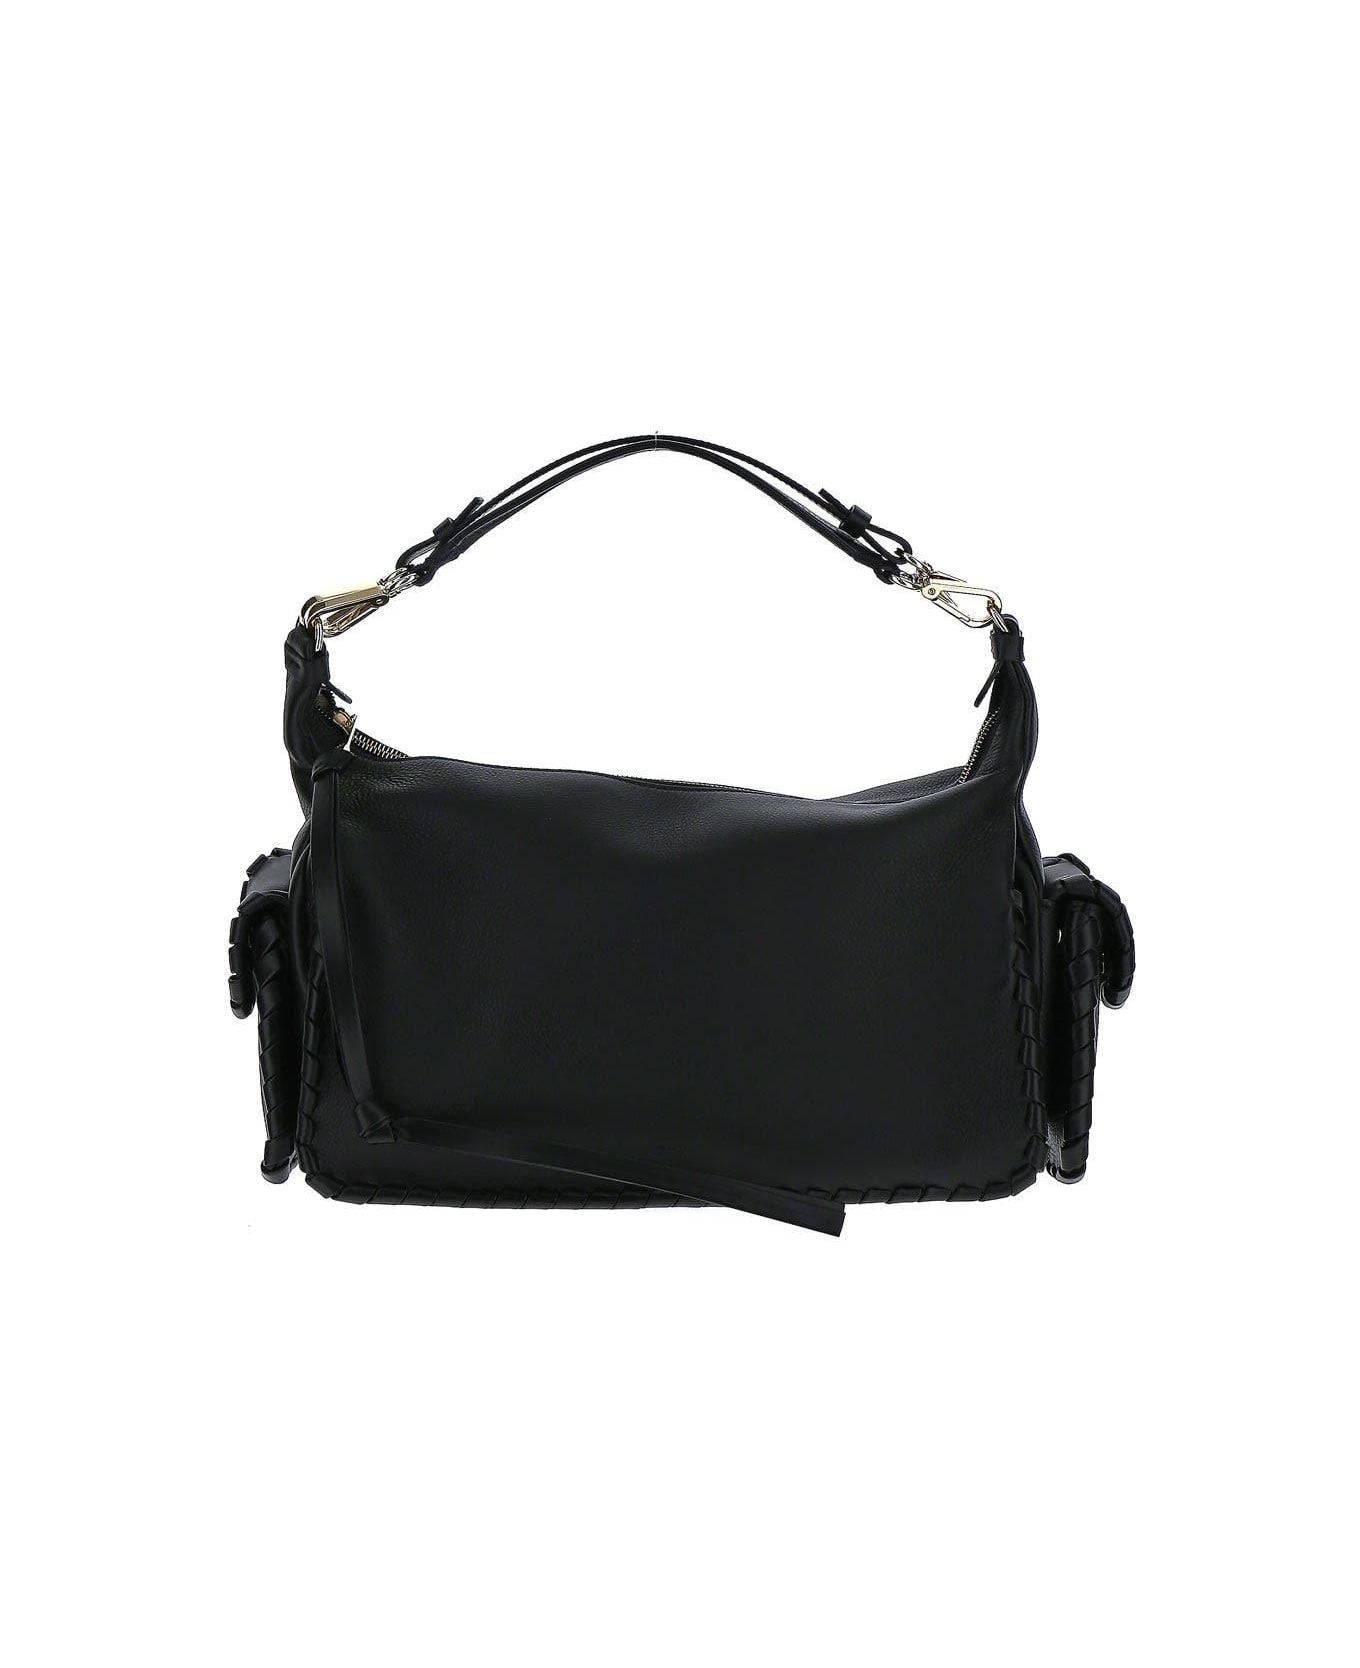 Chloé Black Leather Bag - Black トートバッグ